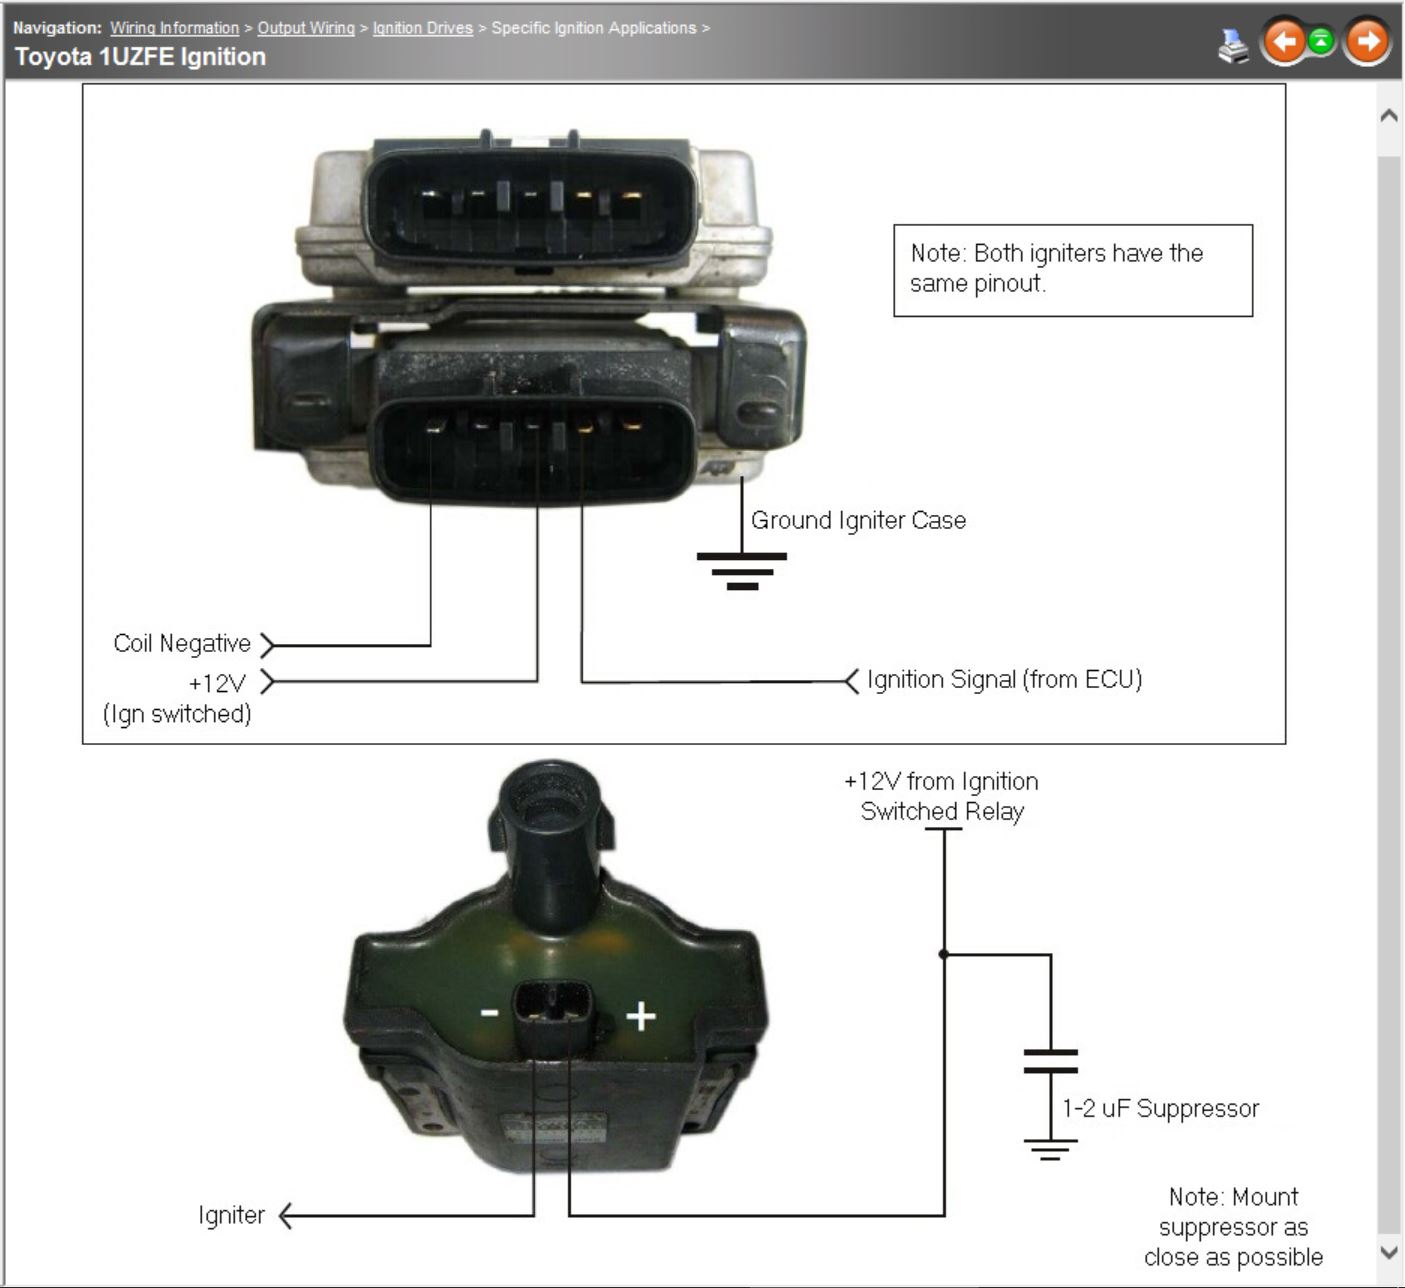 Lexus 1Uzfe Help - G4 - Link Engine Management - Toyota Igniter Wiring Diagram